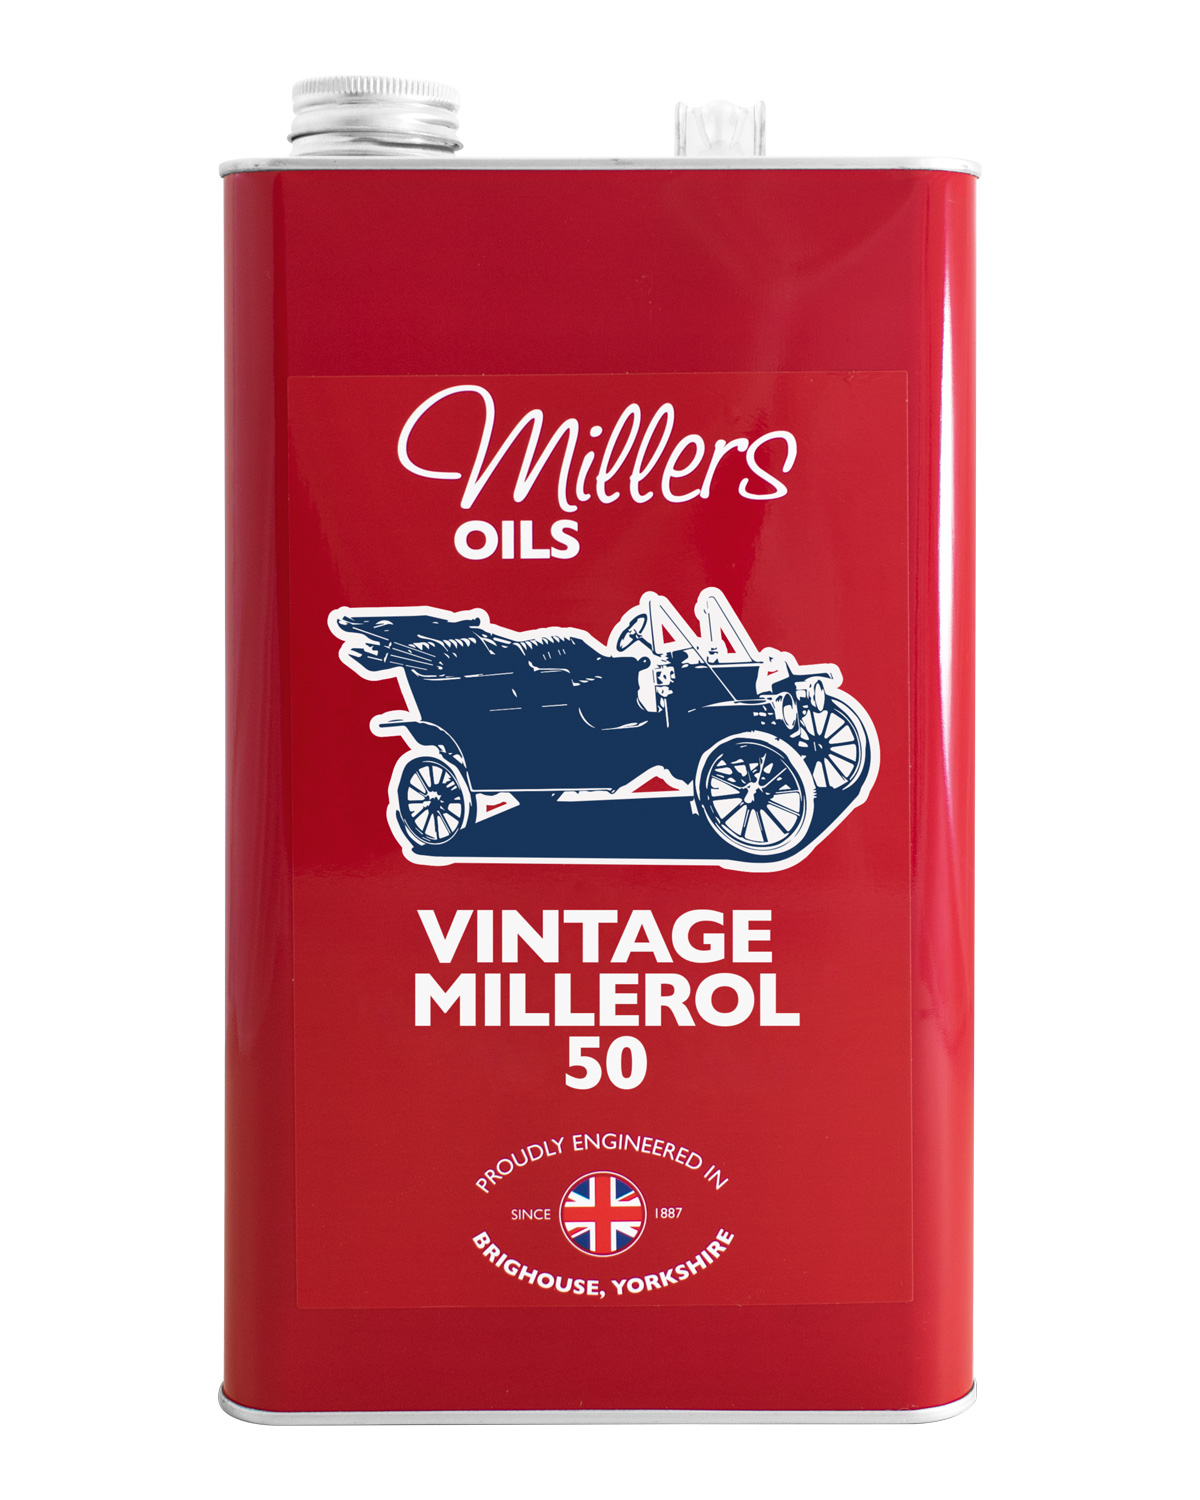 Millers Oils Vintage Millerol 50, 5 Liter